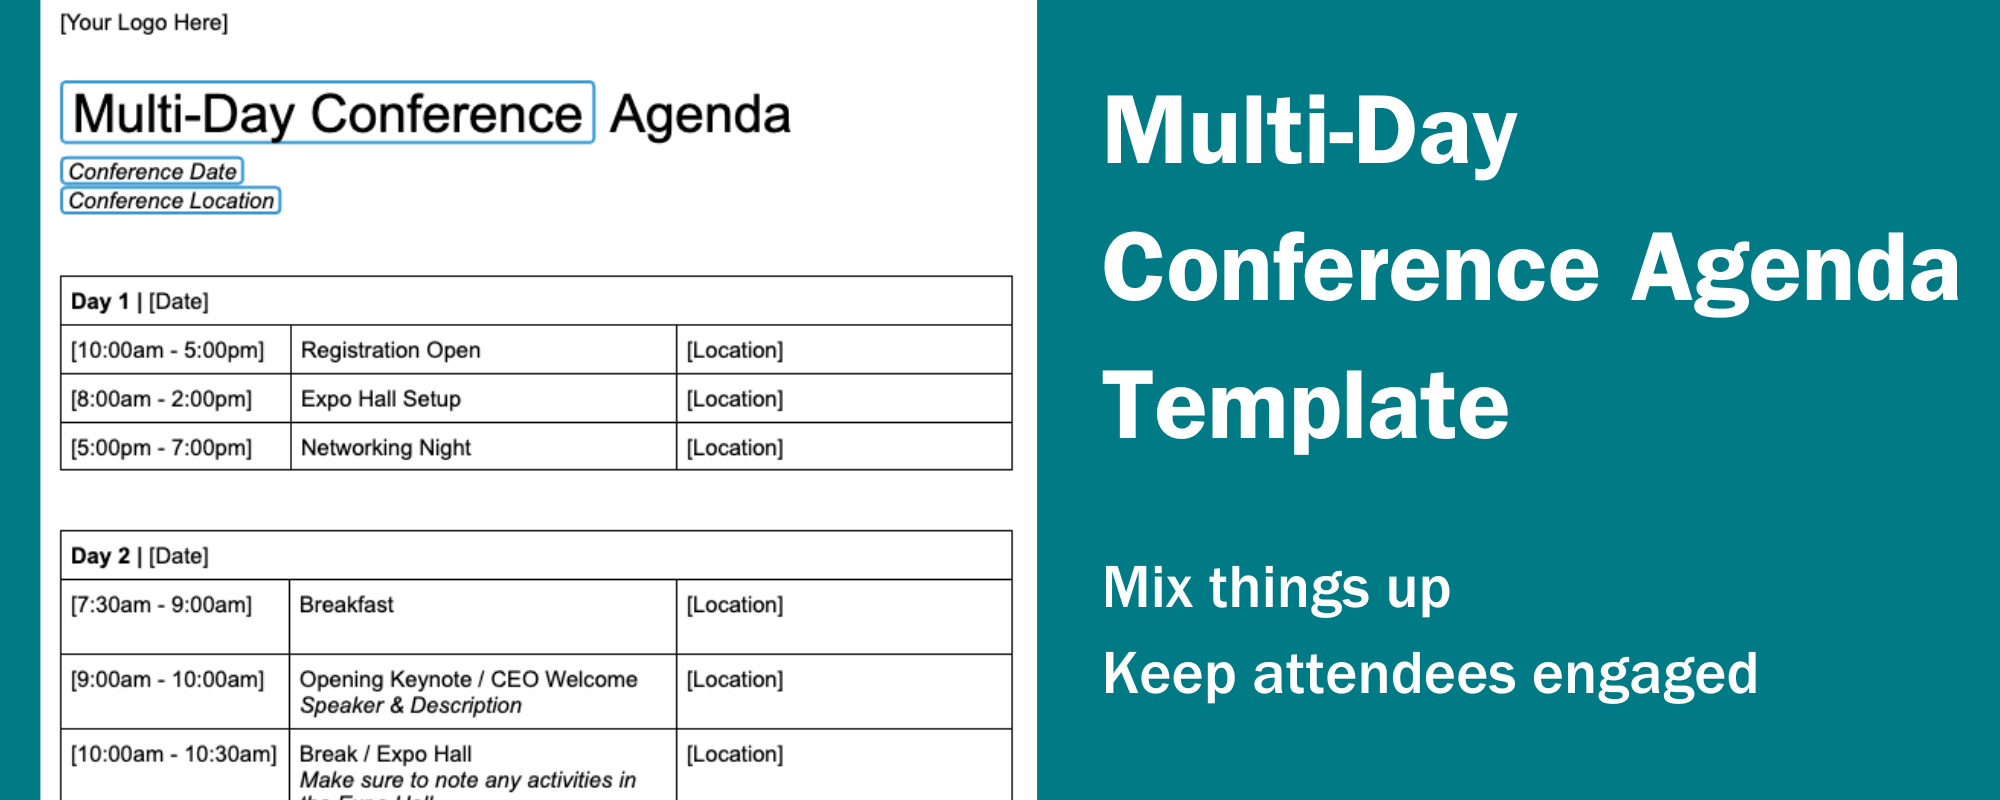 multi-day-conference-agenda